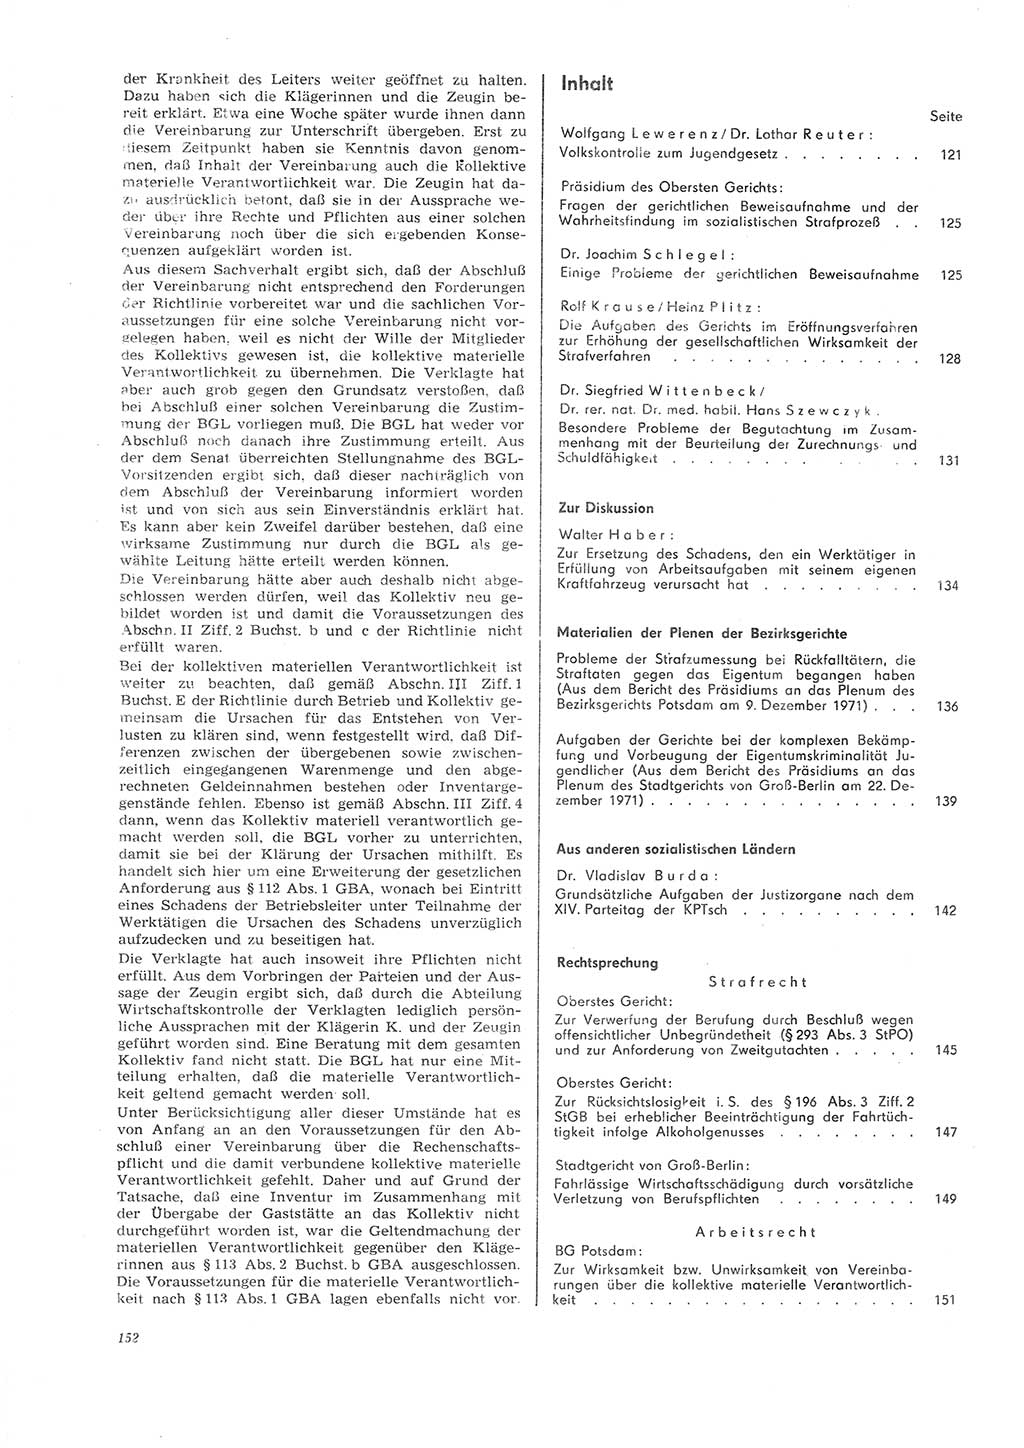 Neue Justiz (NJ), Zeitschrift für Recht und Rechtswissenschaft [Deutsche Demokratische Republik (DDR)], 26. Jahrgang 1972, Seite 152 (NJ DDR 1972, S. 152)